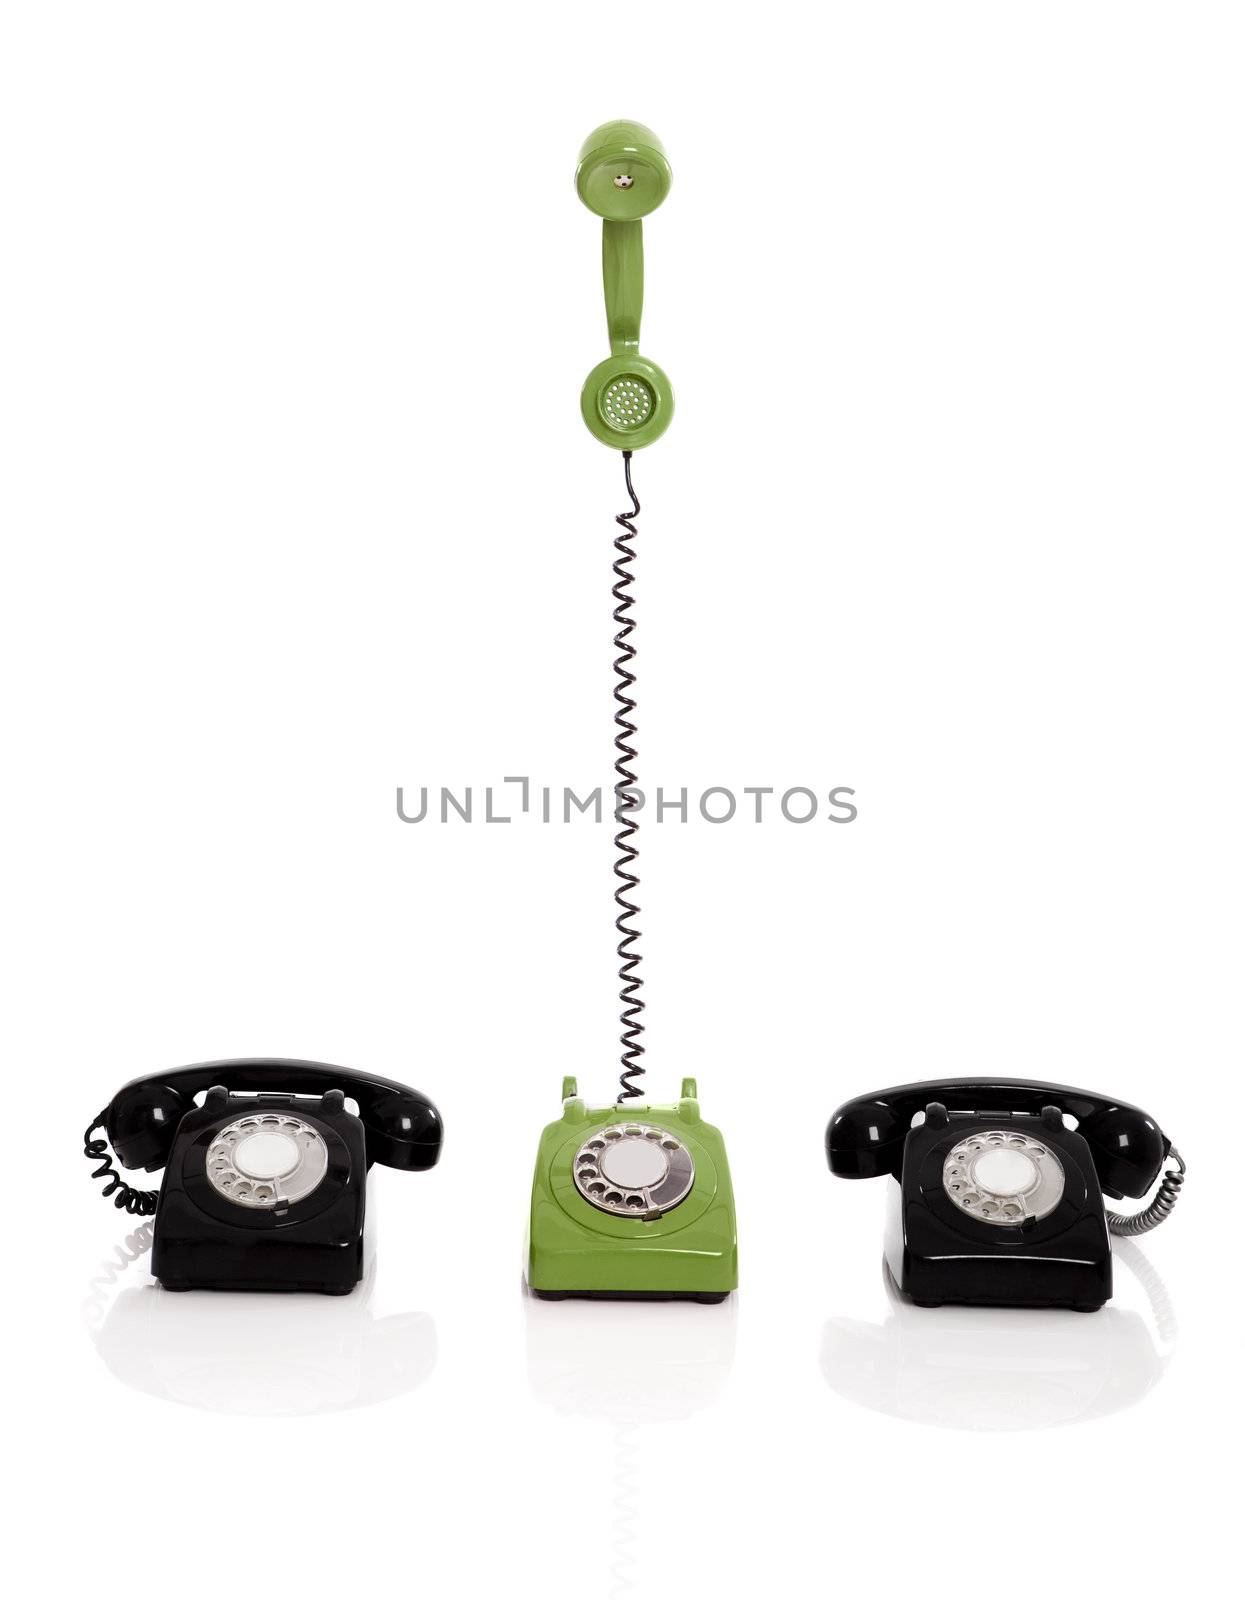 Vintage phones by Iko